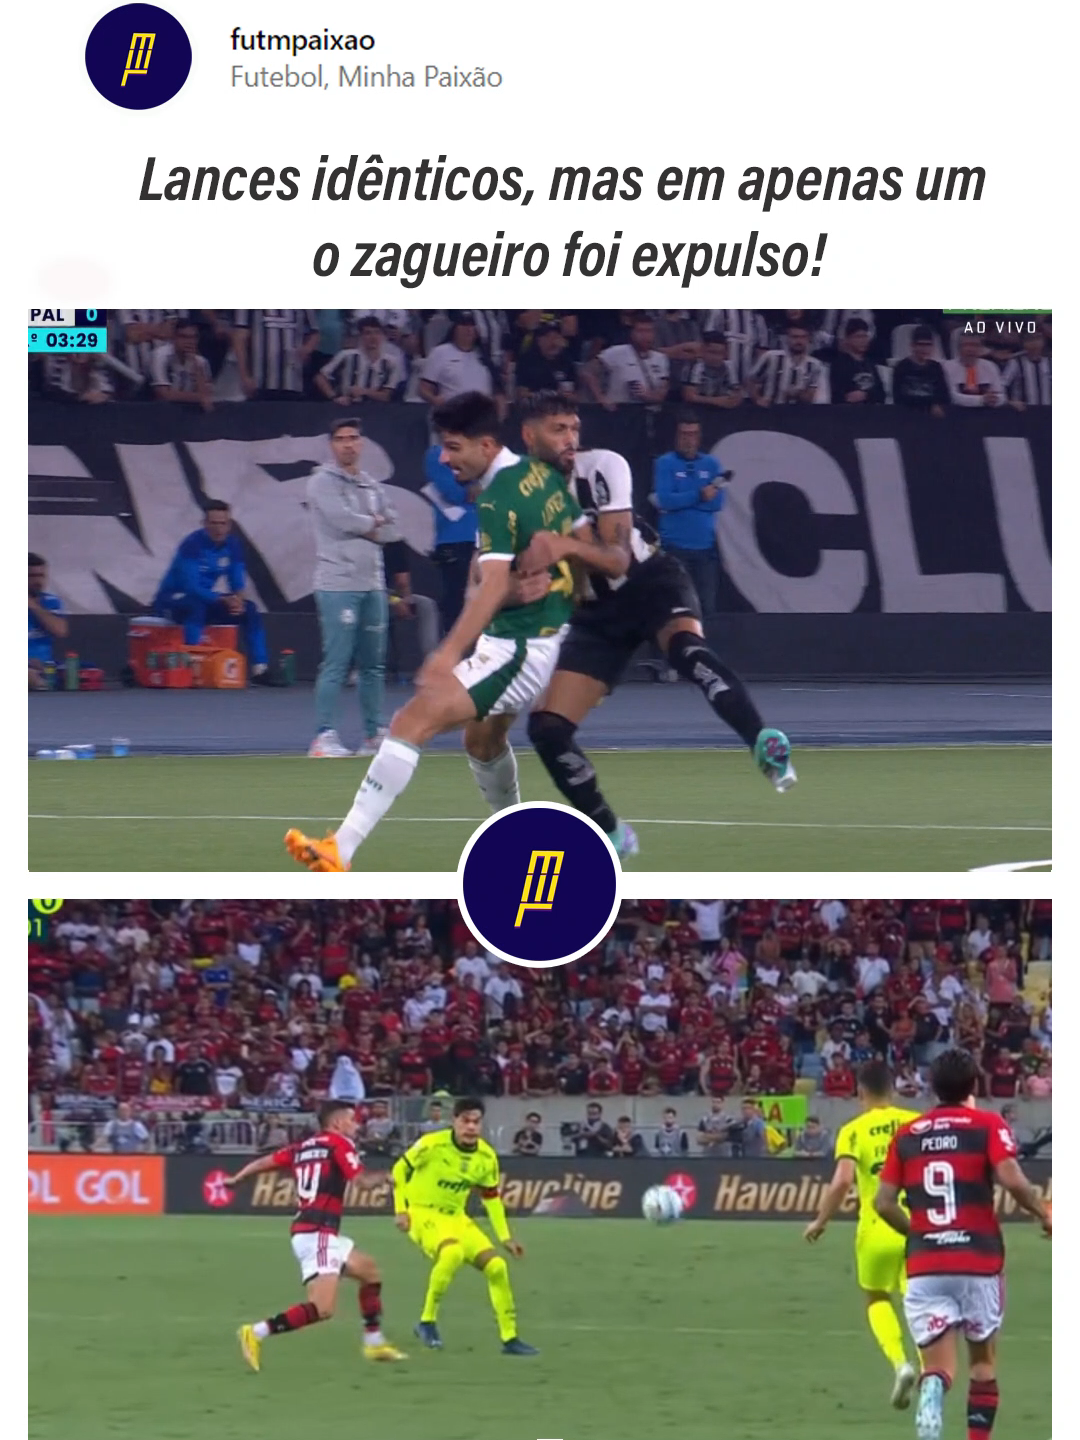 O Palmeiras pediu expulsão para o zagueiro do Botafogo #botafogo #palmeiras